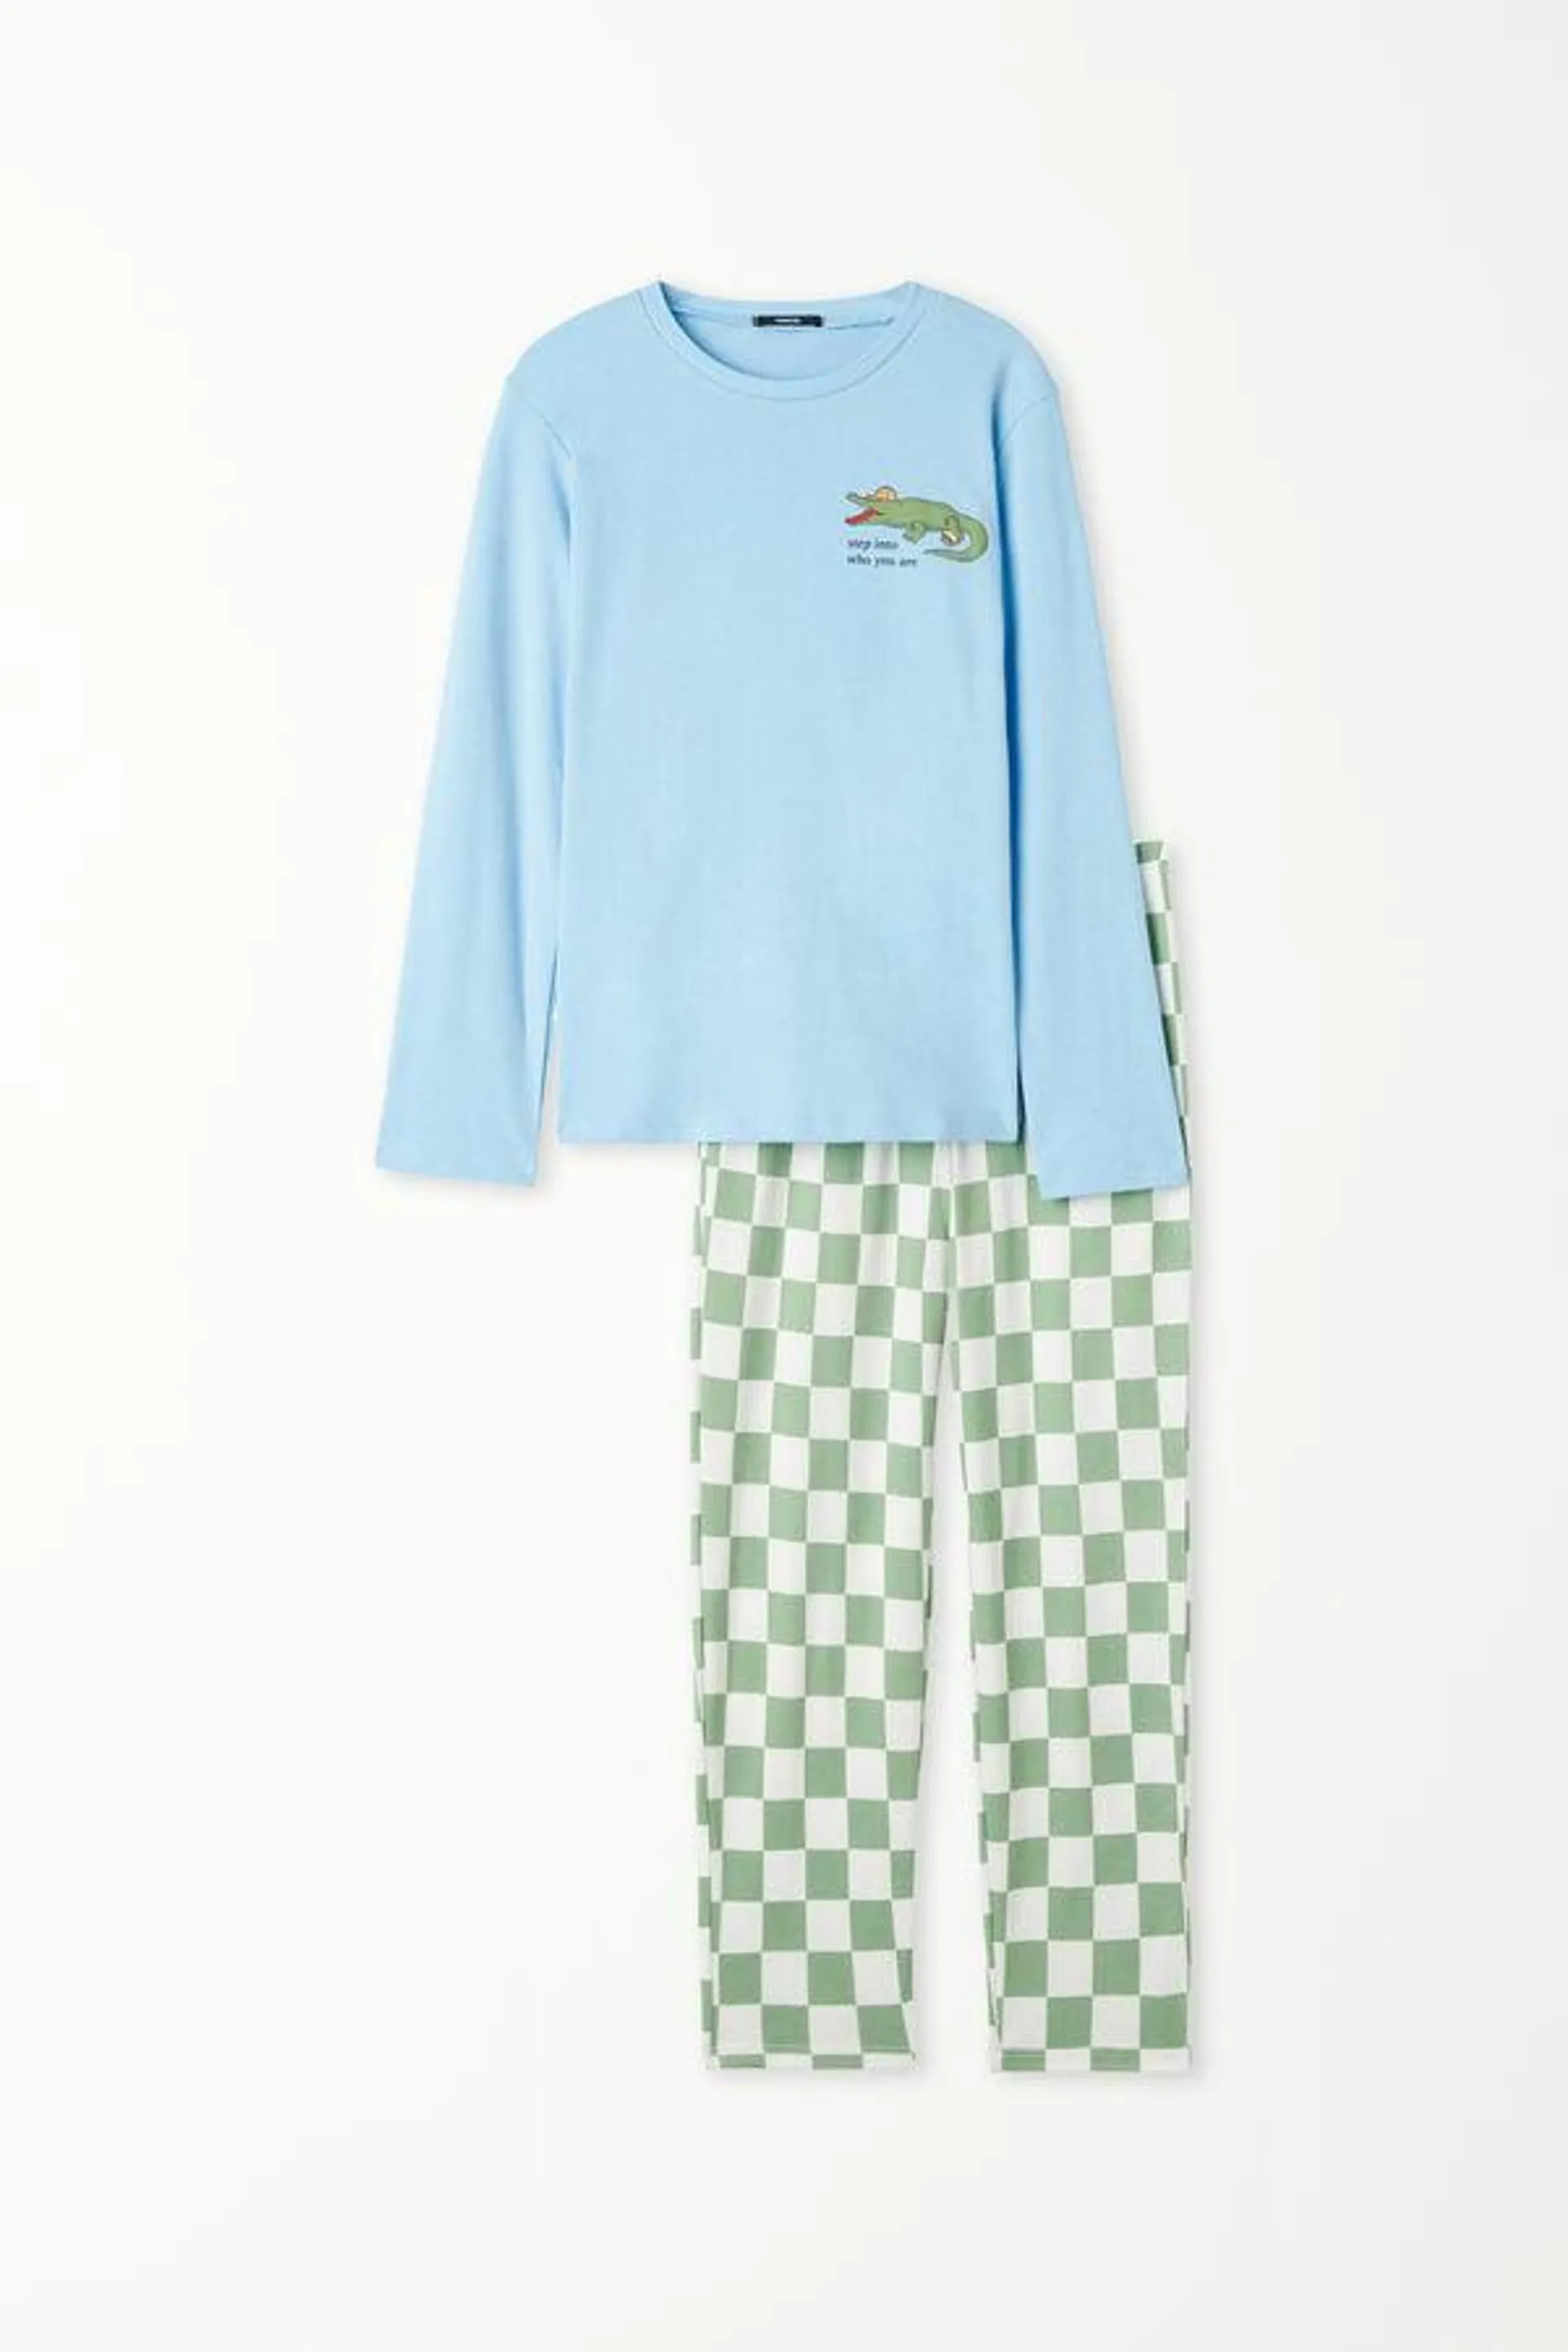 Pijama Largo de Algodón con Estampado de Cocodrilo para Niño